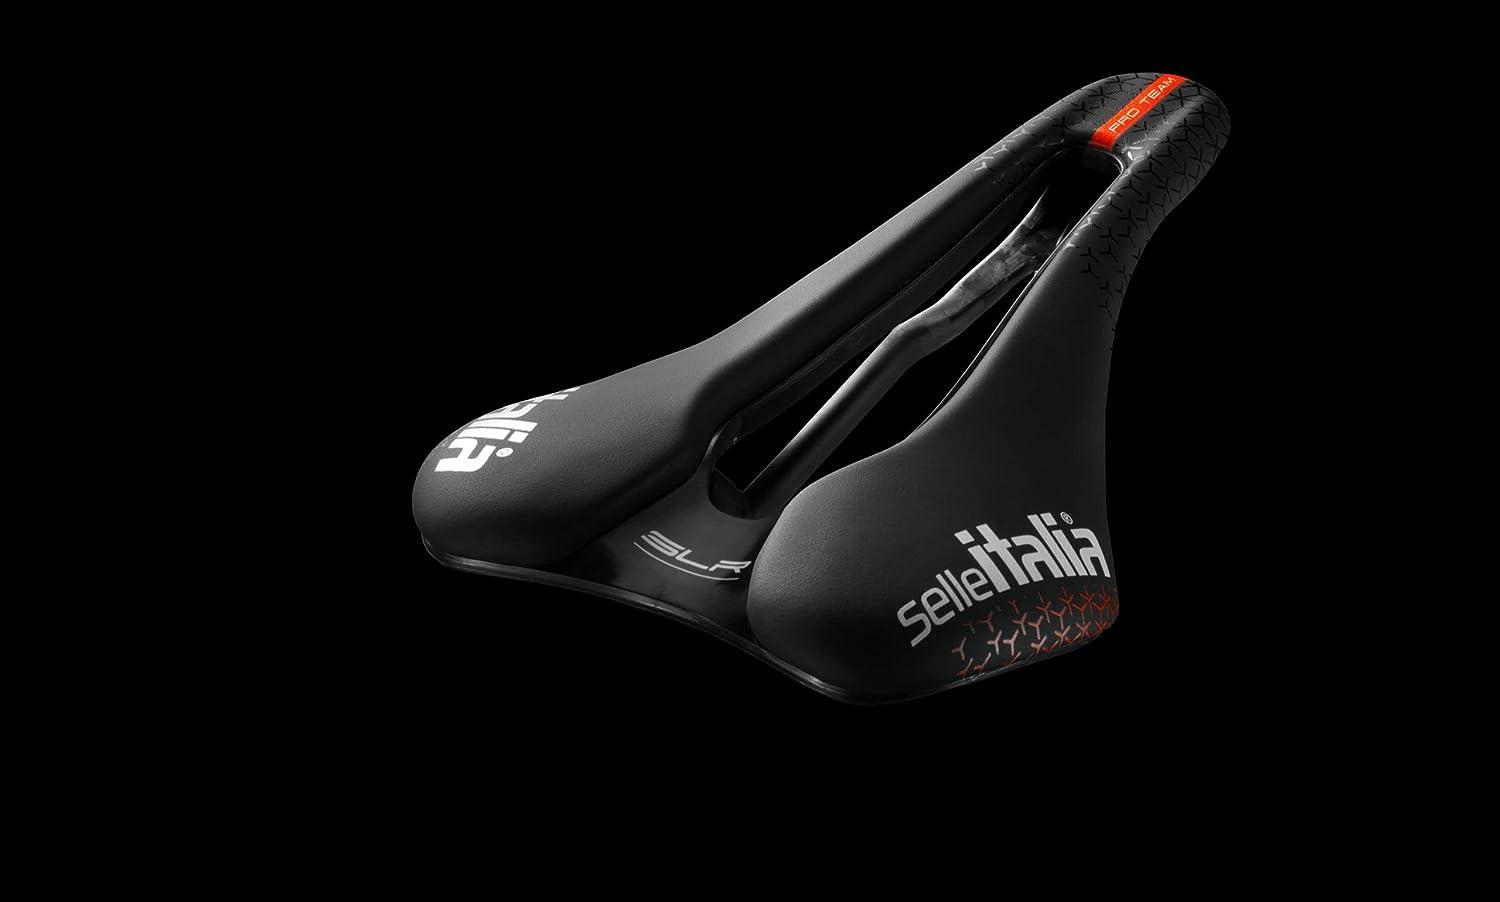 Selle Italia SLR Kit Carbonio Superflow S3 saddle - Black